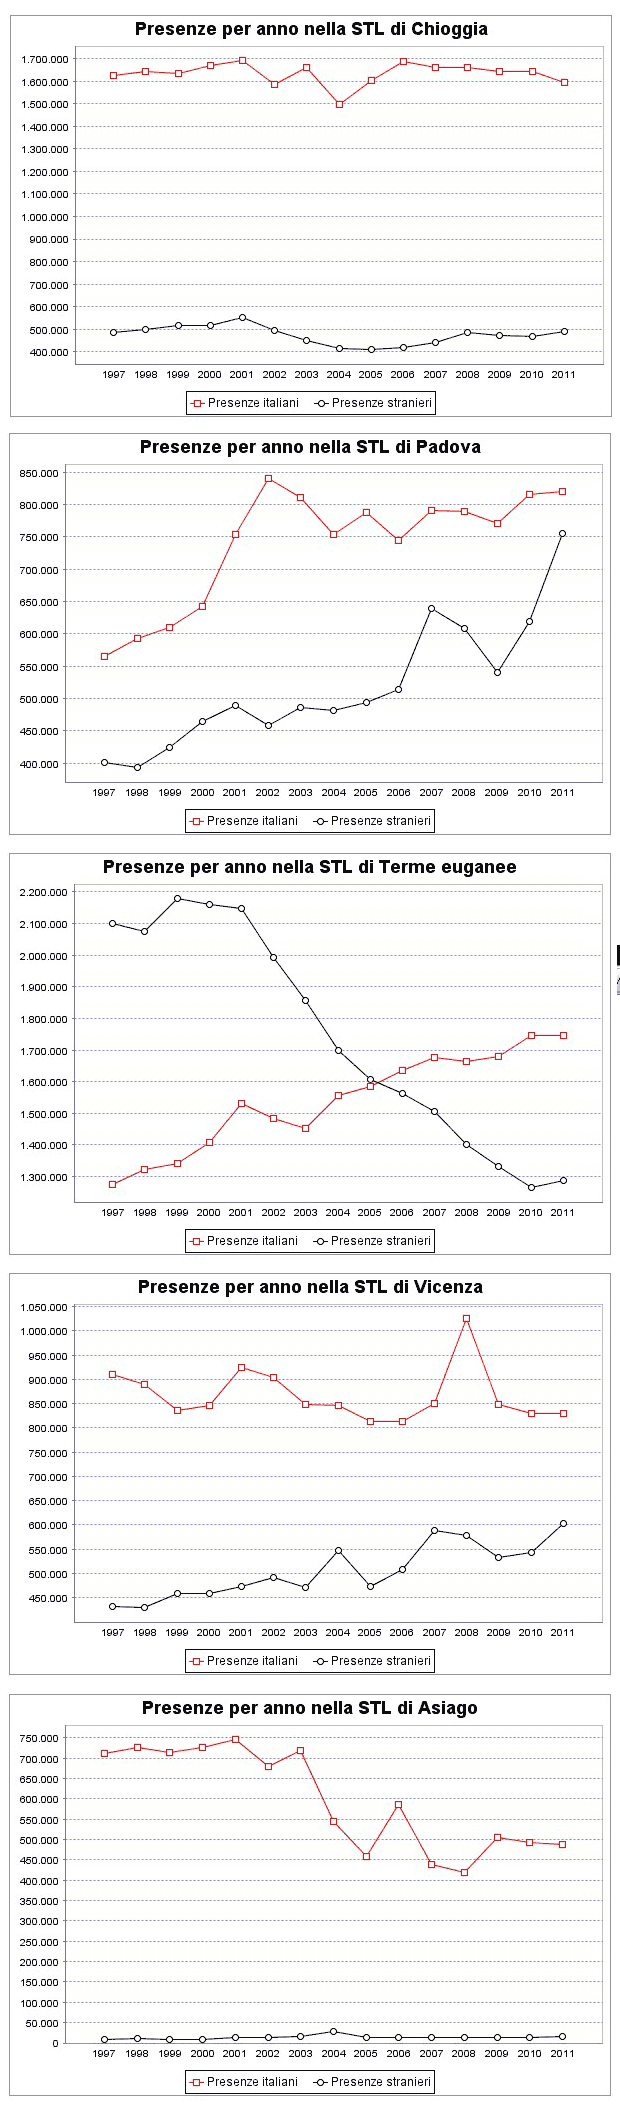 presenze turistiche negli STL della regione Veneto - 002